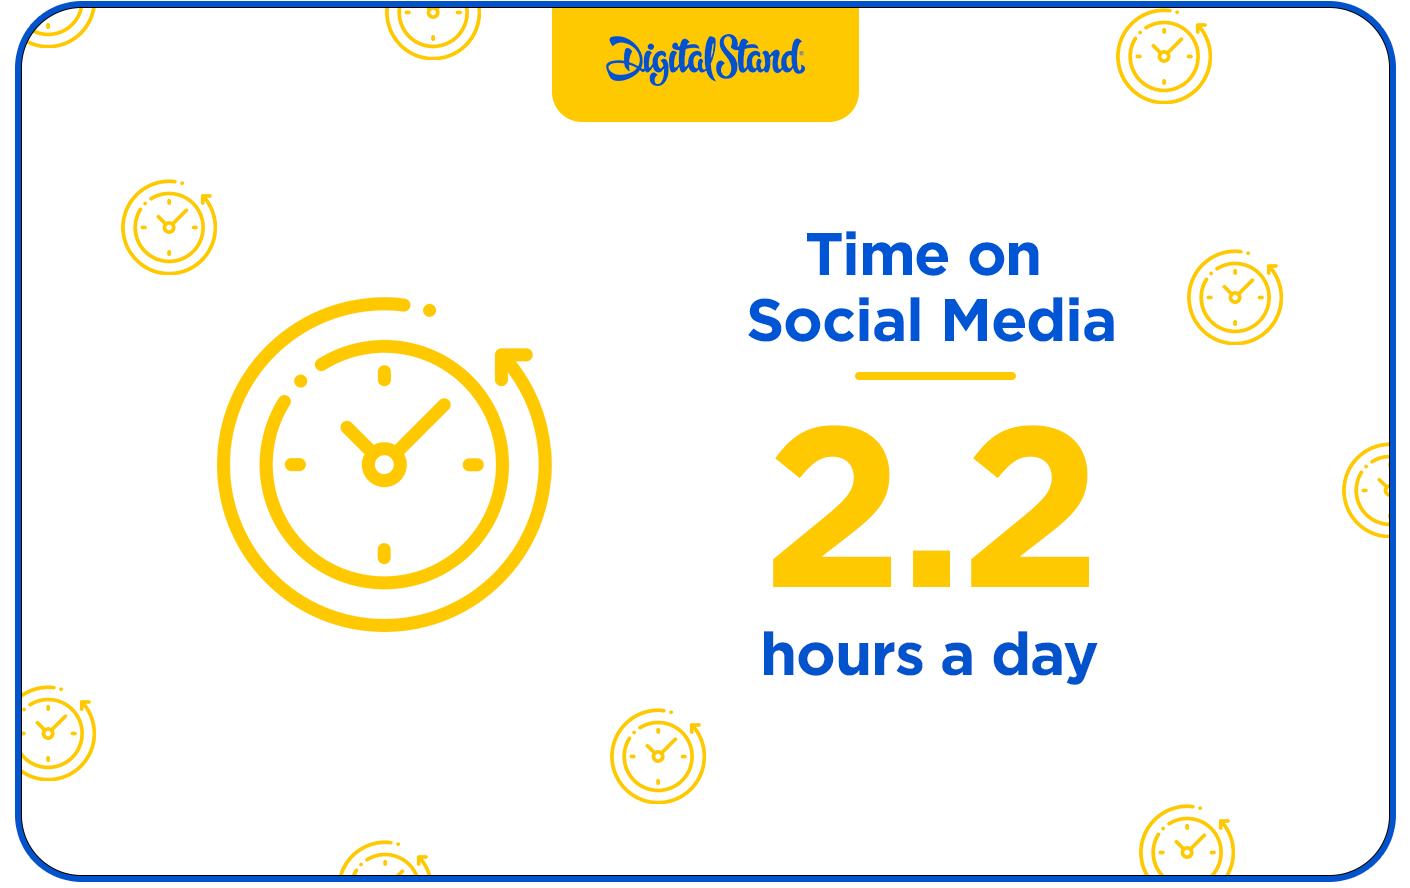 Time on Social Media